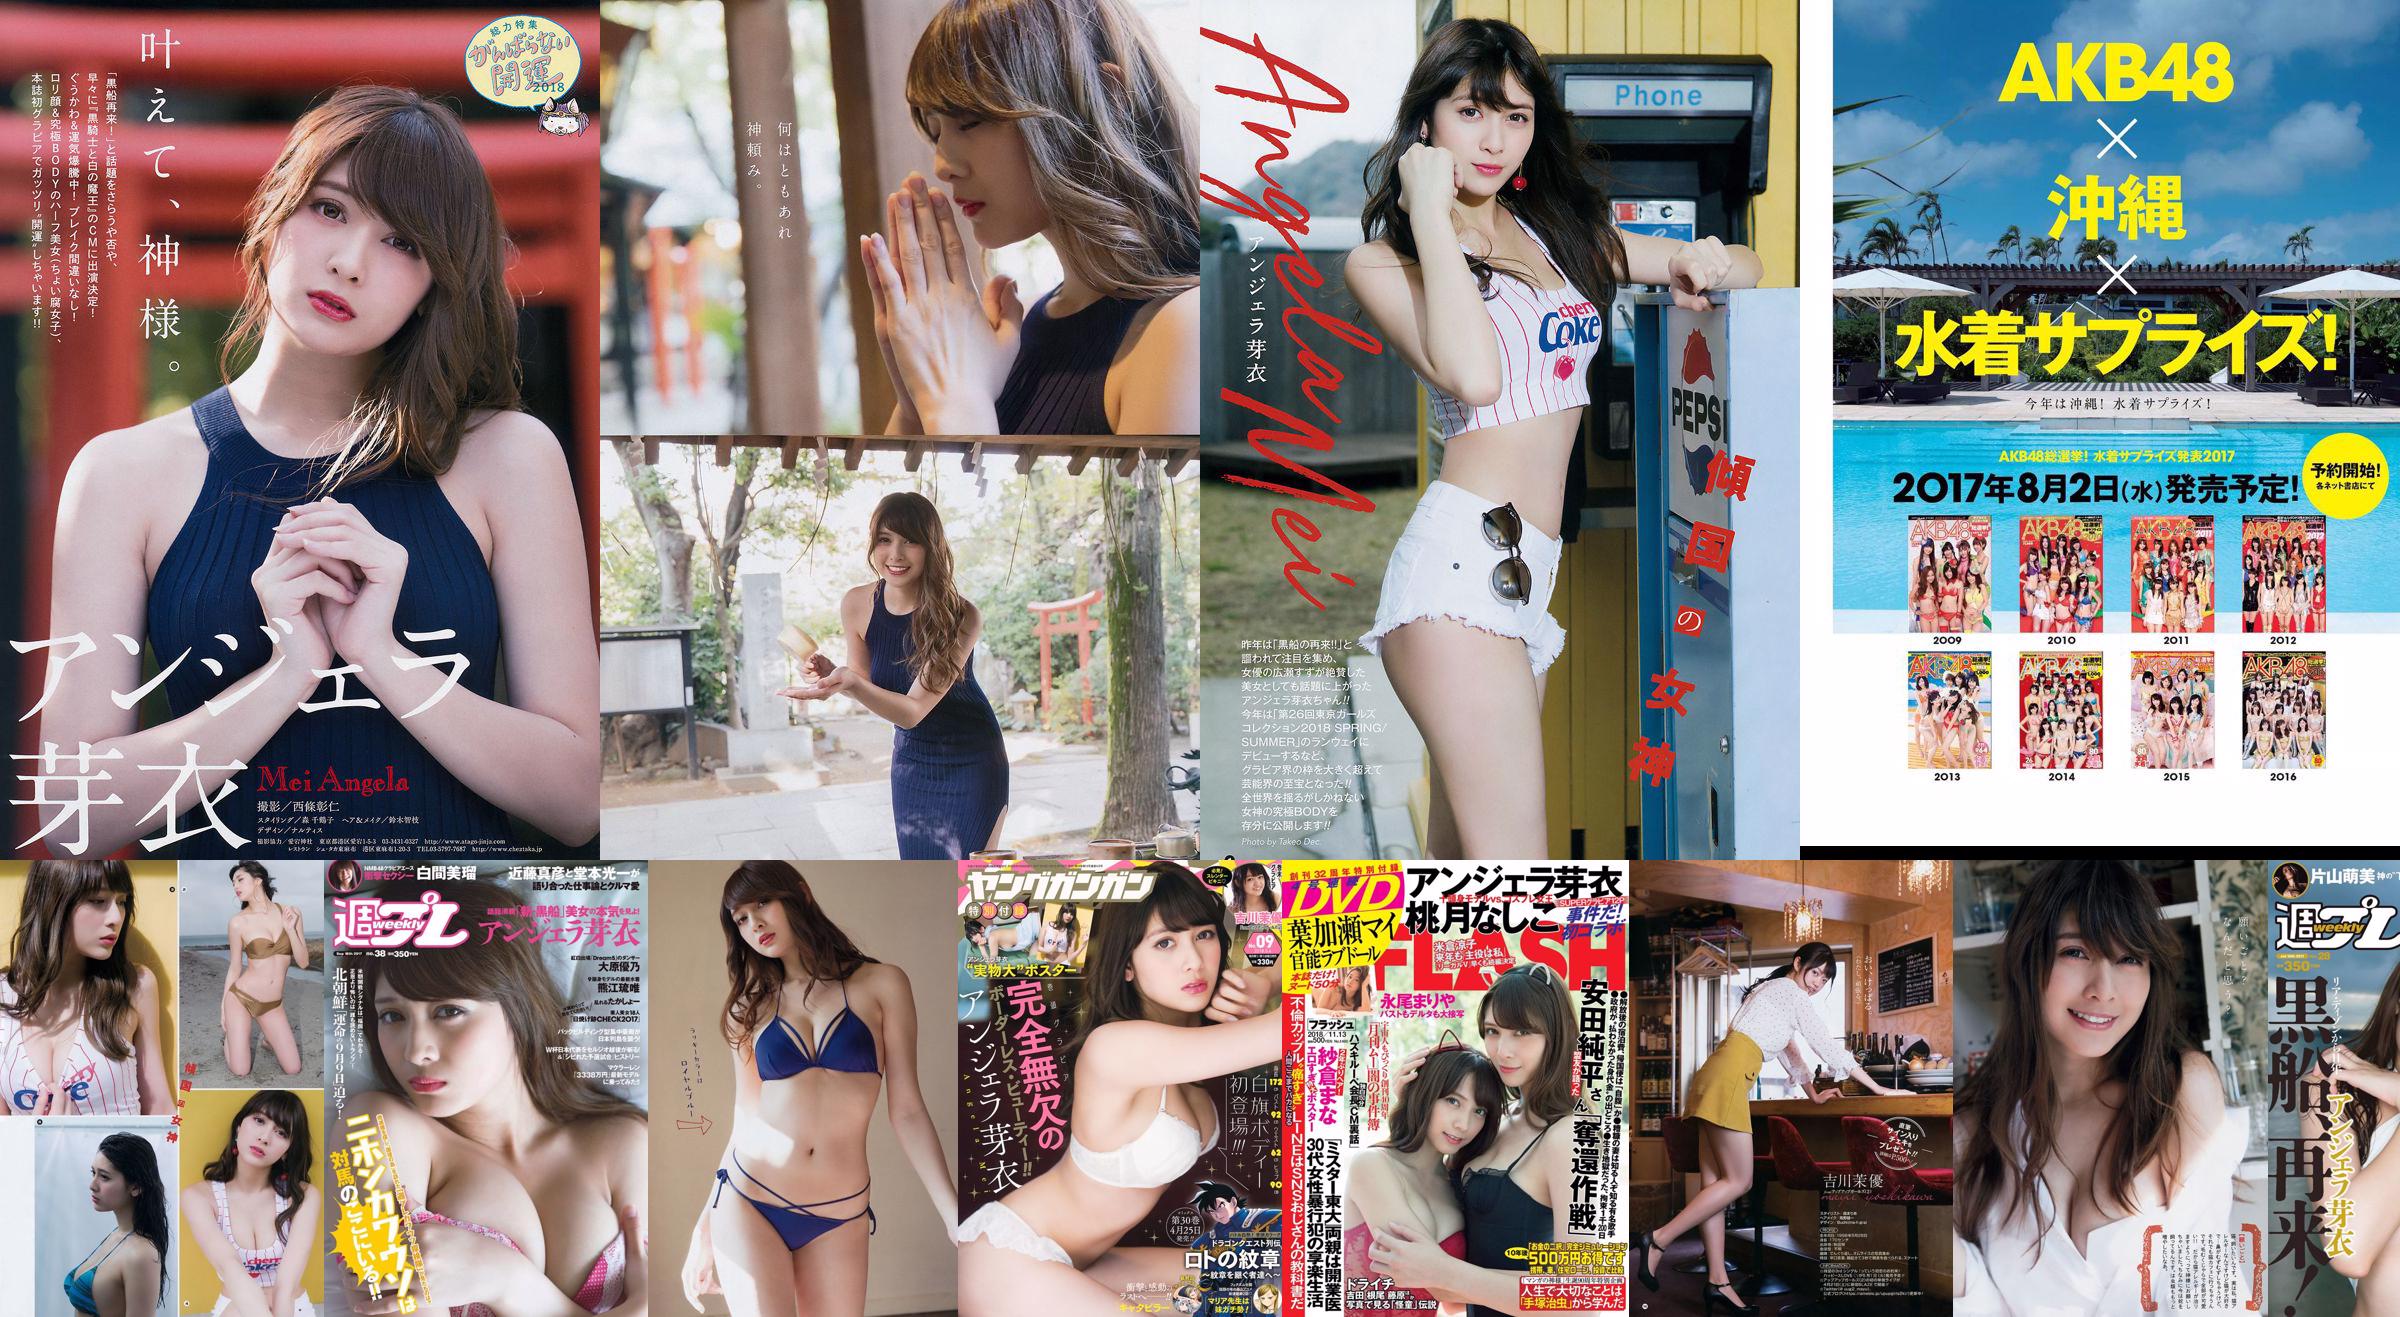 Angela Mei Riho Abiru Yuuna Suzuki Yuno Ohara Moemi Katayama Ito Ohno [Wöchentlicher Playboy] 2017 Nr. 28 Foto No.1a5287 Seite 1